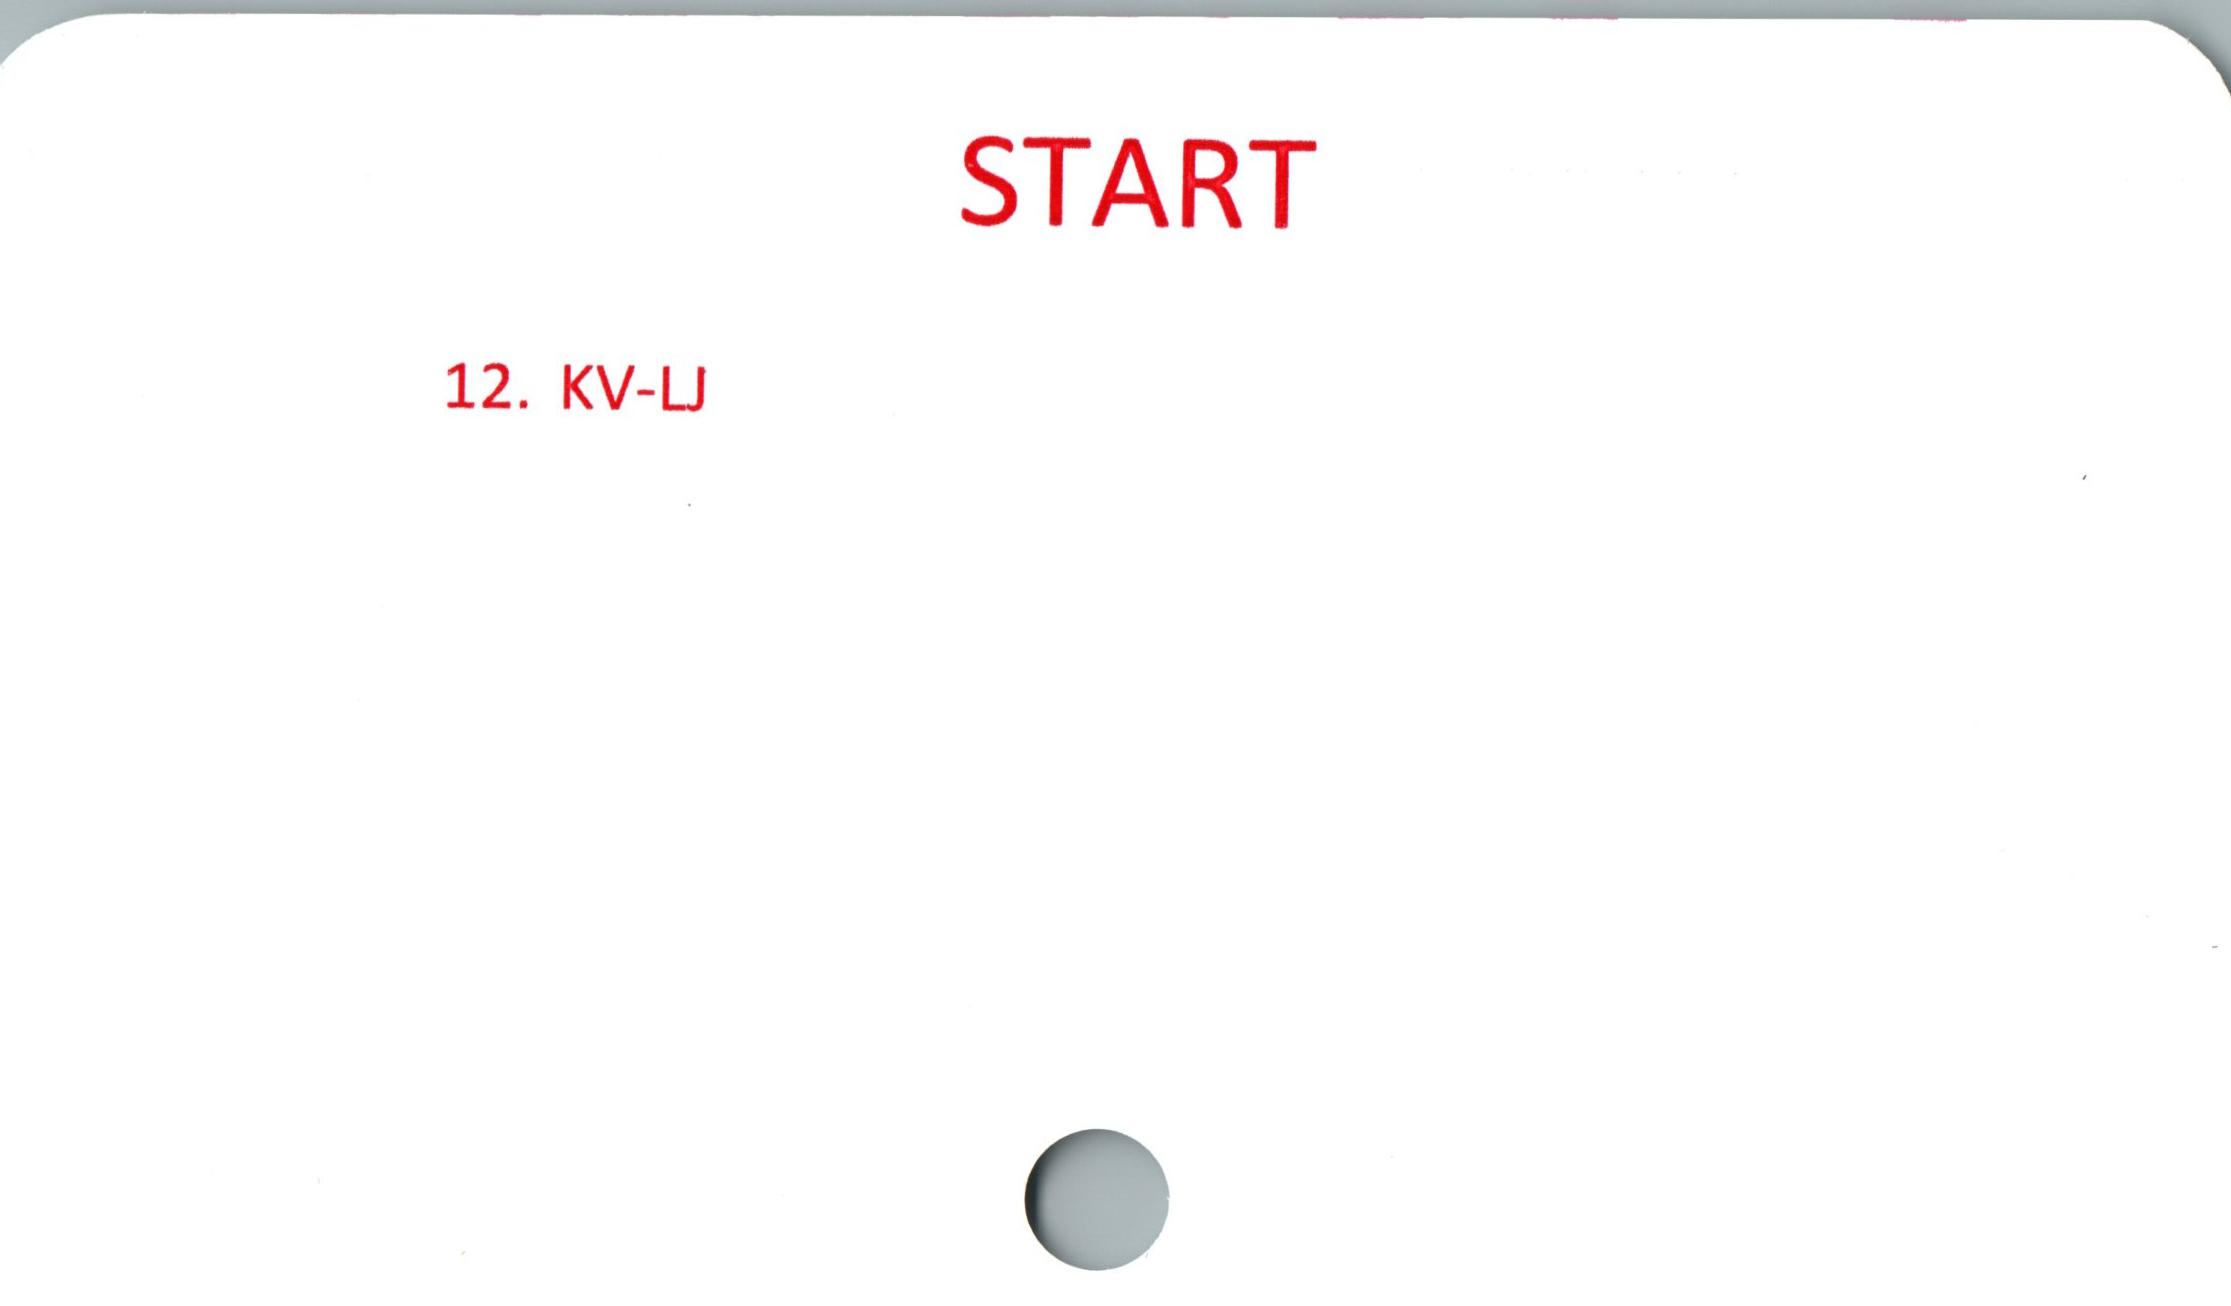  ﻿12. KV-U

START

